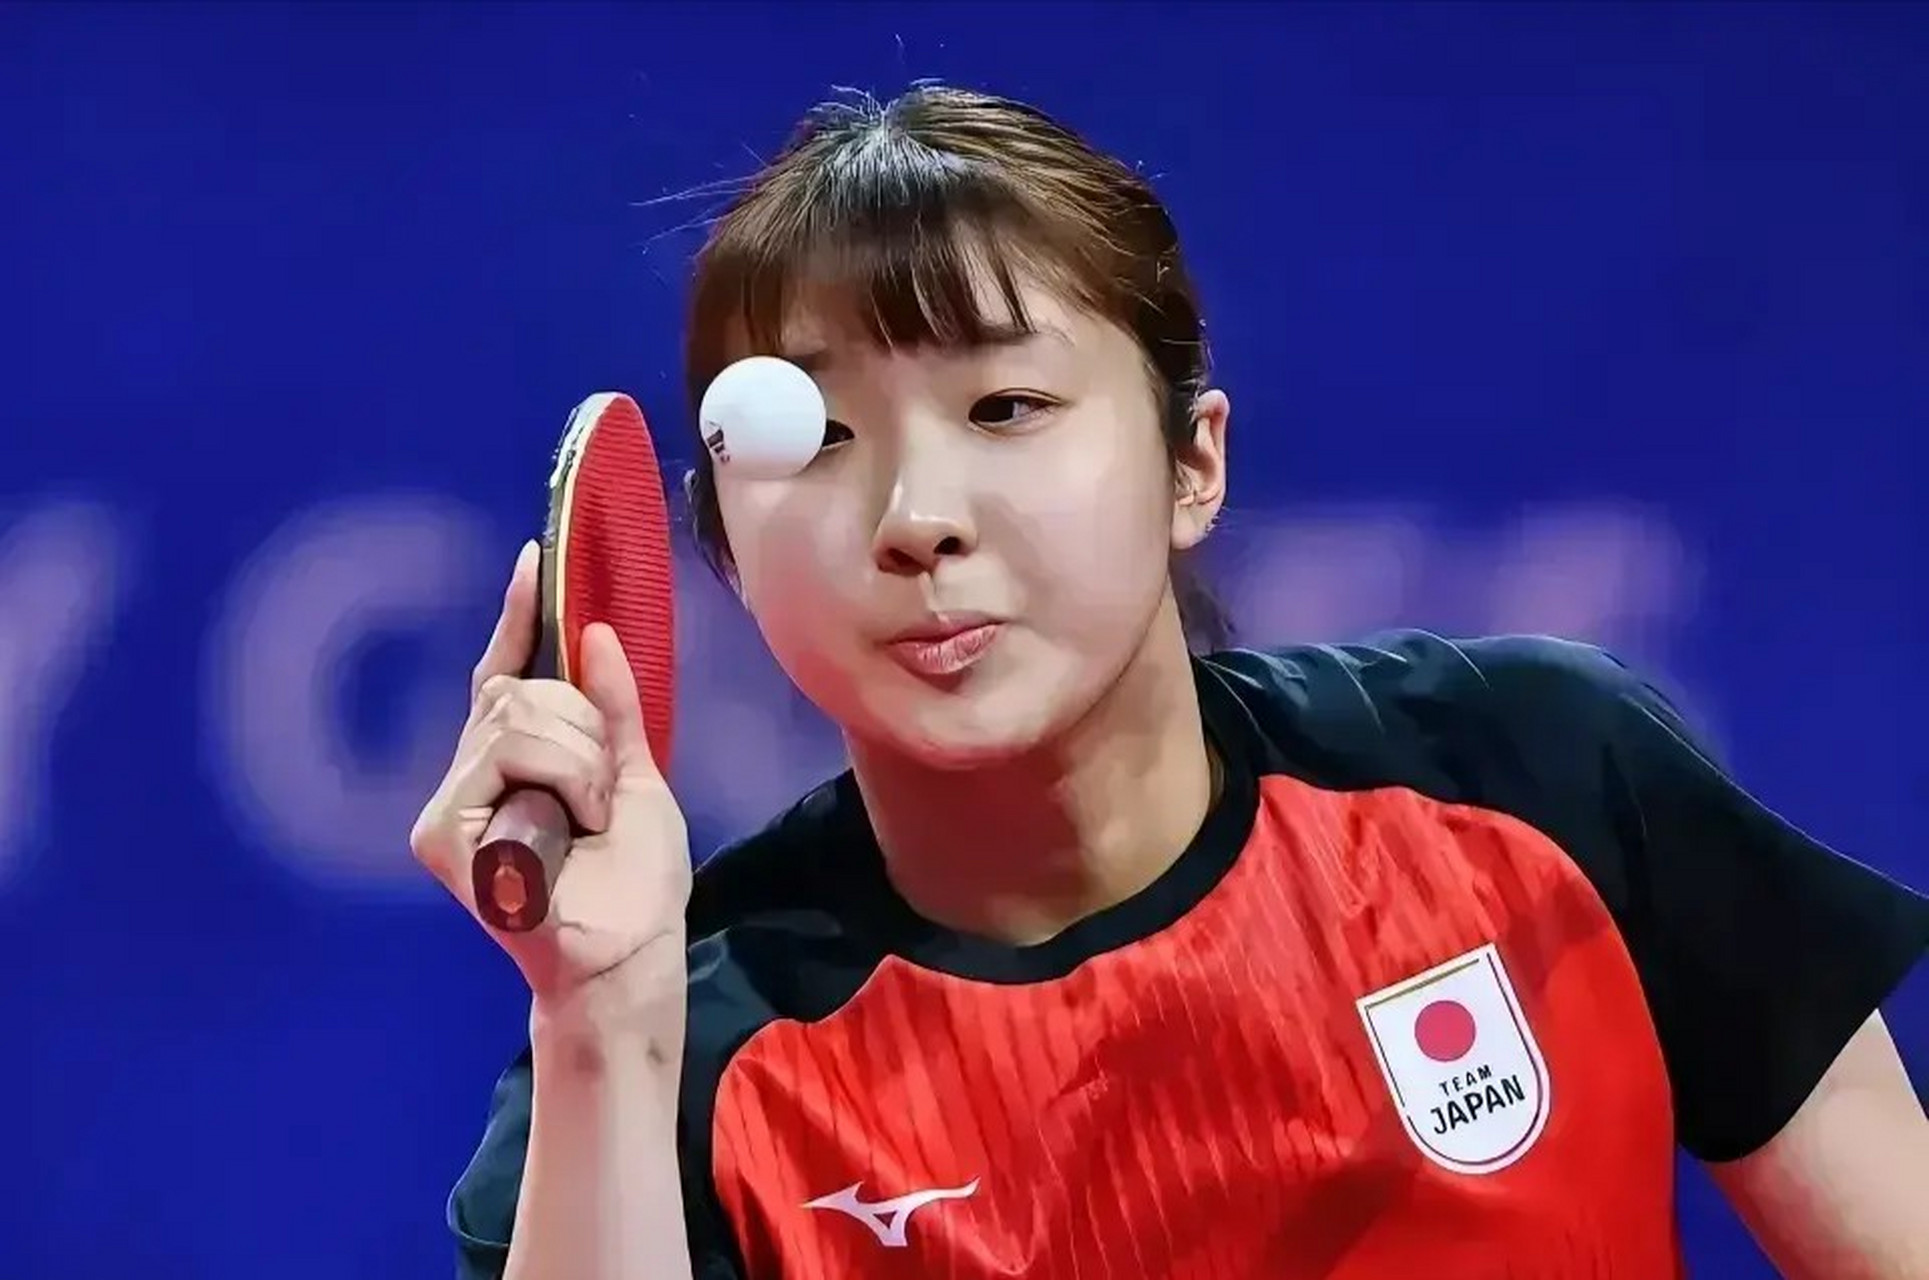 成都大运会21岁日本乒乓球运动员出泽杏佳爆红,说实在的小姑娘不光球